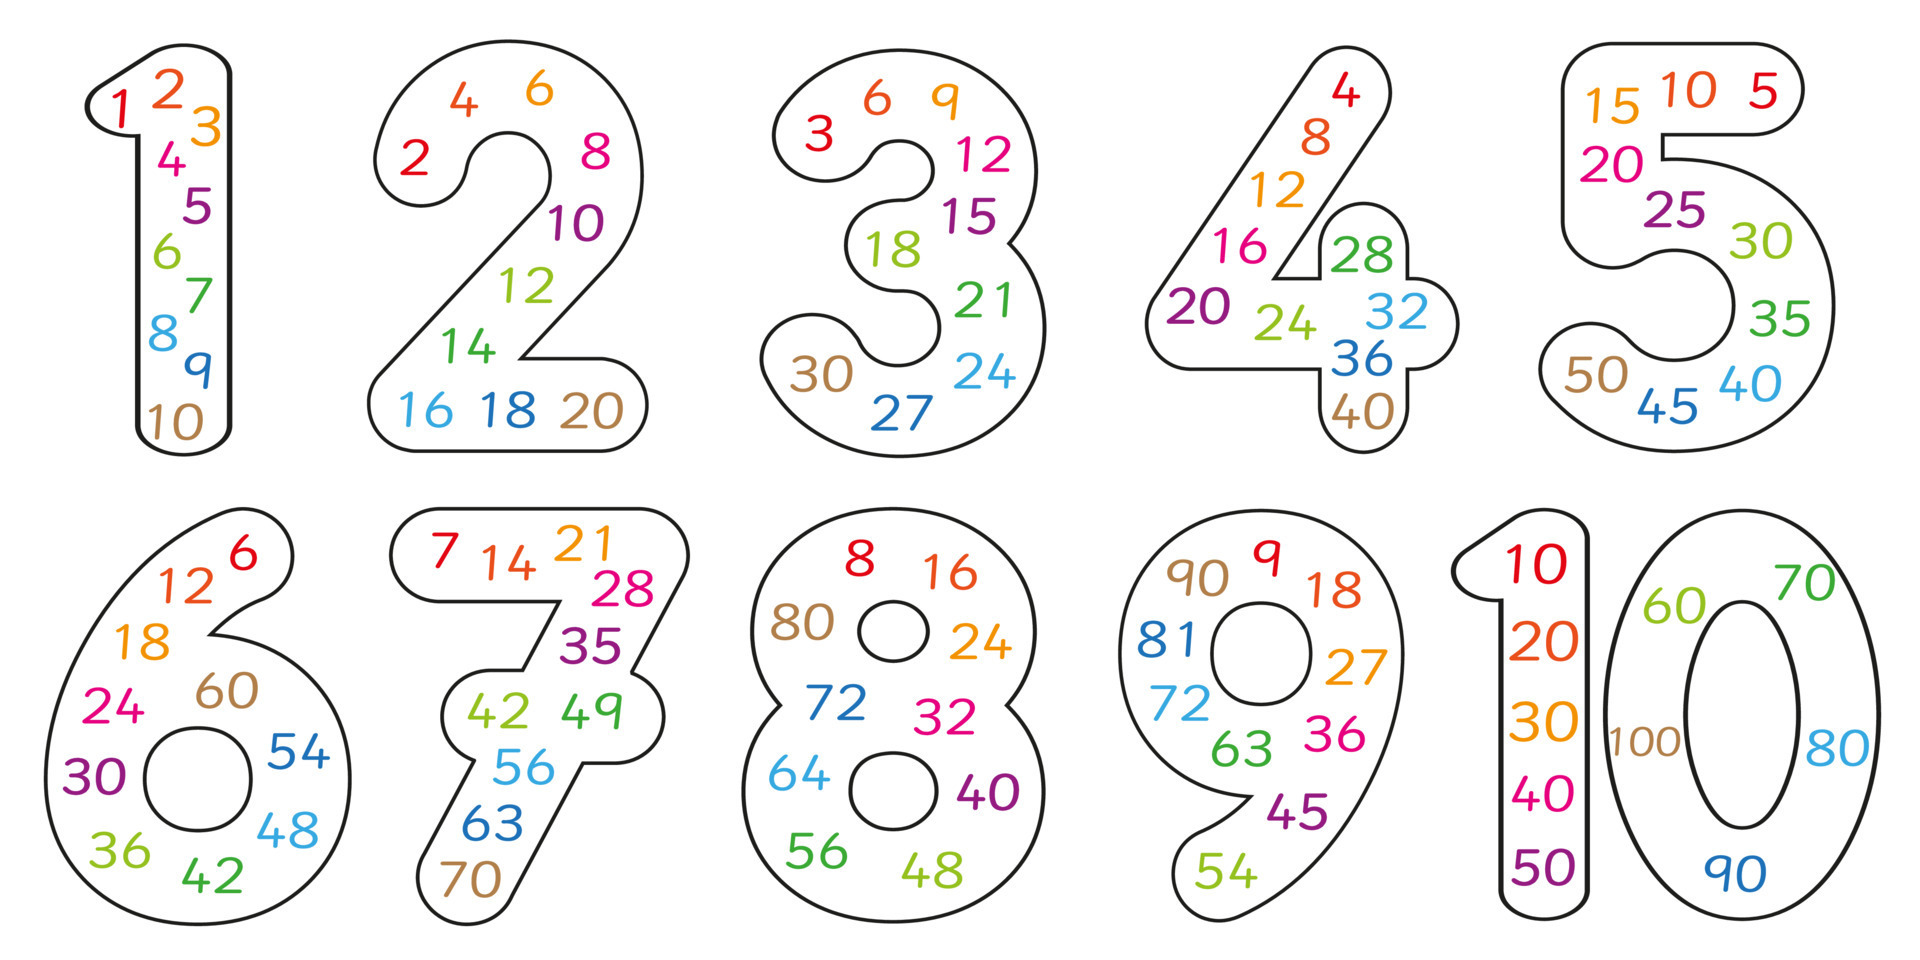 Modelo de vetor de matemática de multiplicação para crianças